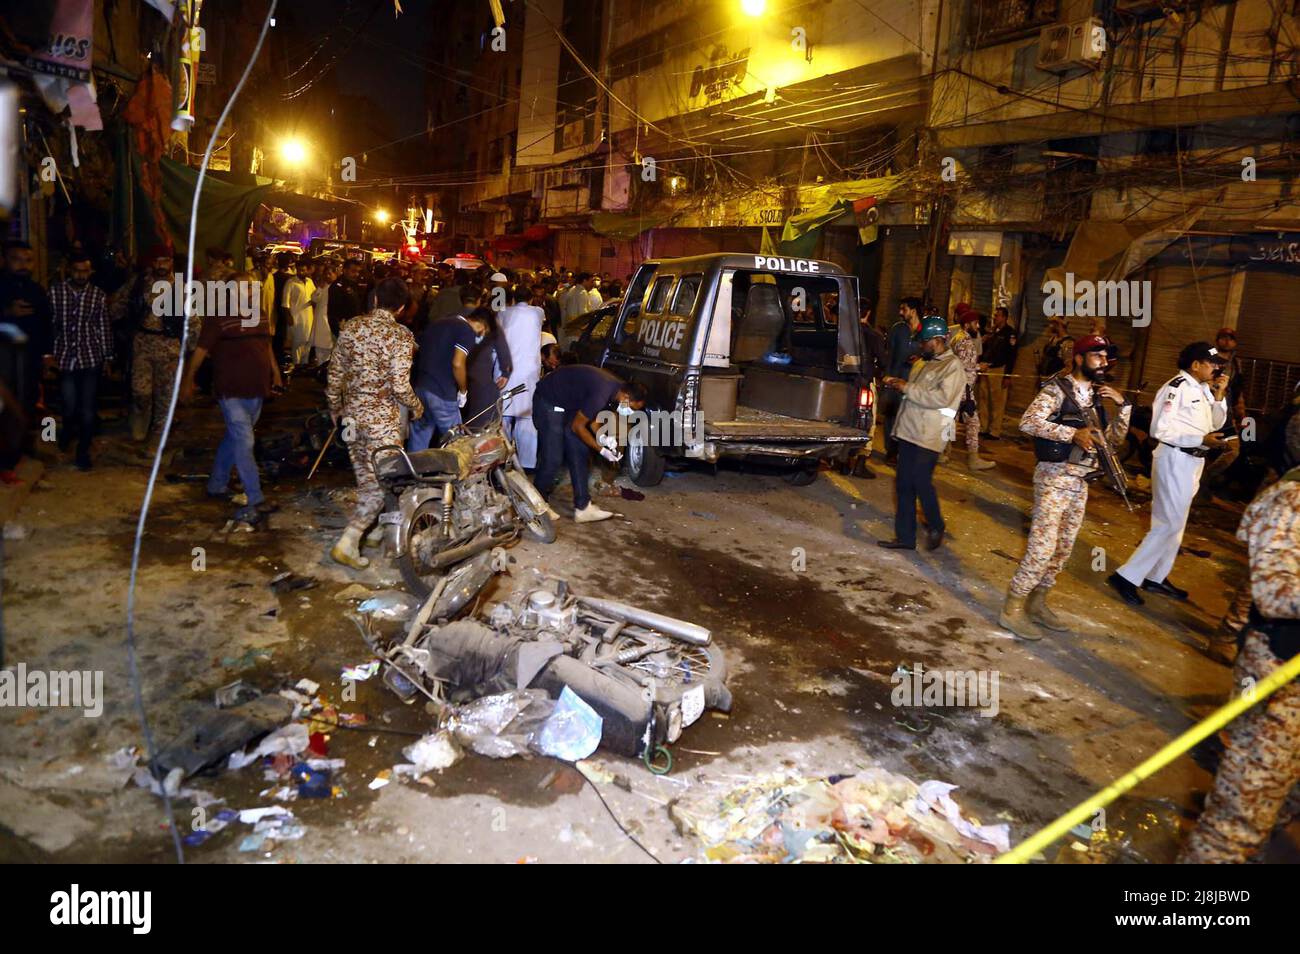 Vista della sede mentre i funzionari di sicurezza sono Cordon fuori del sito per l'ispezione e l'operazione di salvataggio è in corso dopo un'esplosione situata nella zona di Kharadar di Karachi lunedì 16 maggio 2022. Almeno una persona è stata uccisa e circa una dozzina di persone sono rimaste ferite dopo che si è verificata un'esplosione all'affollato mercato Bolton di Karachi a Kharadar. I funzionari di polizia hanno detto mentre la natura dell'esplosione è ancora accertata, sembra che un veicolo di polizia era l'obiettivo. Nel frattempo, i feriti sono stati spostati in un ospedale. Foto Stock